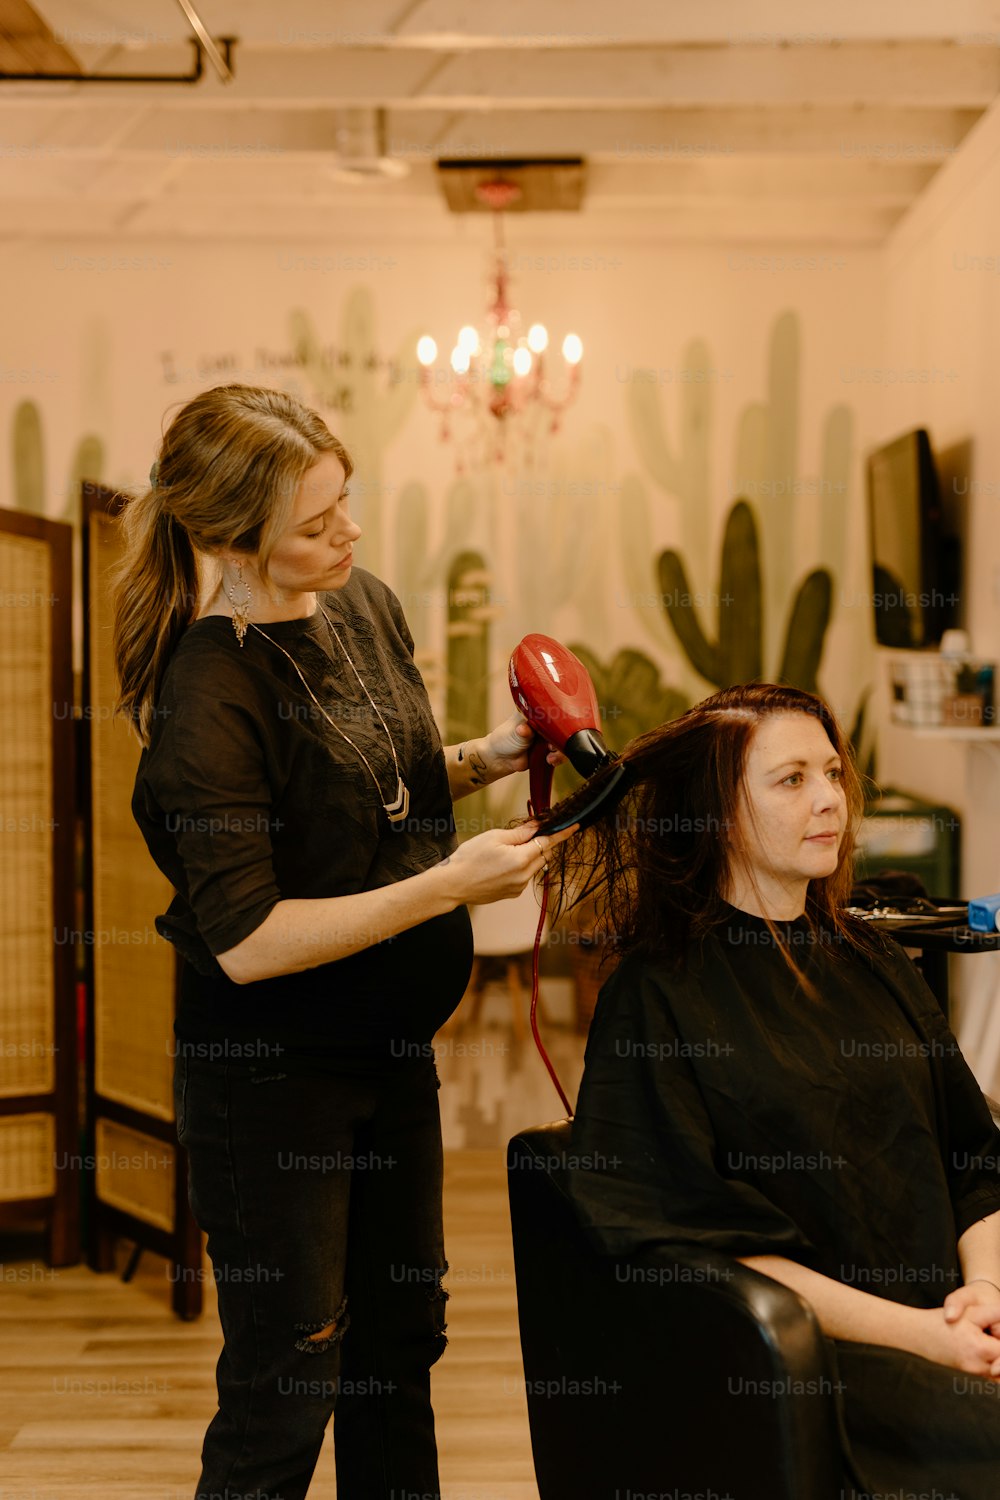 Eine Frau föhnt die Haare einer anderen Frau in einem Salon